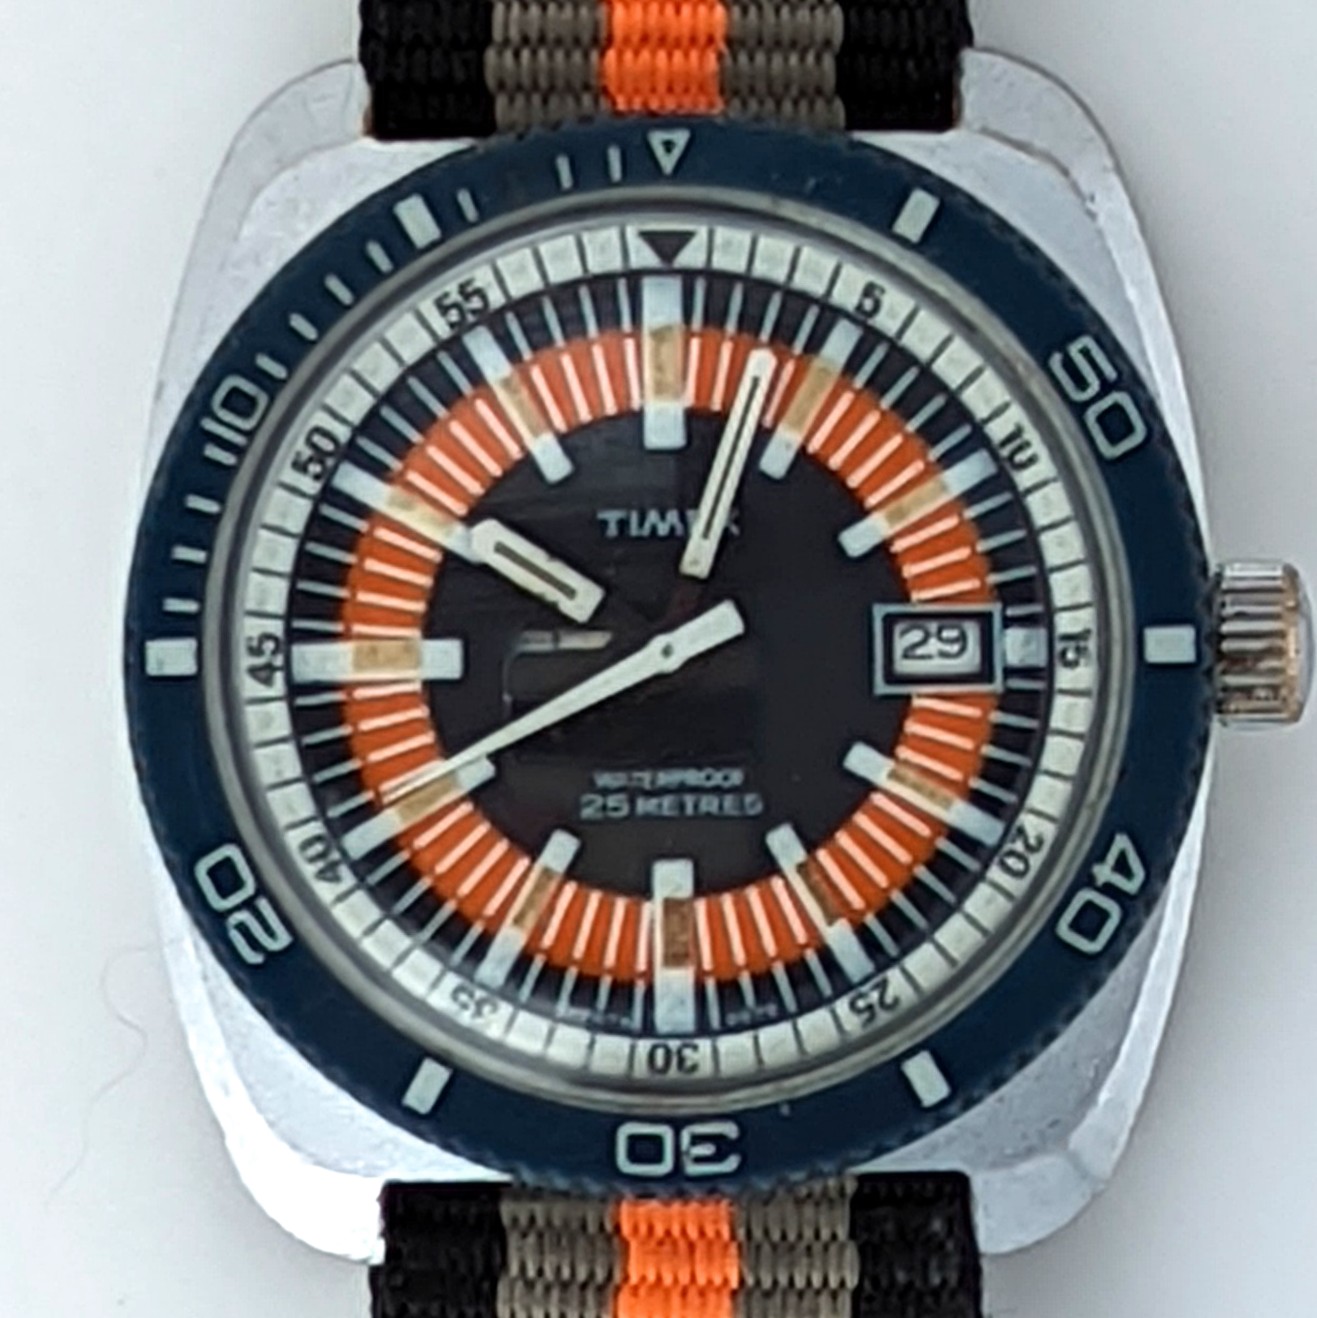 Timex Marlin 27675 2572 [1972] Dive Watch